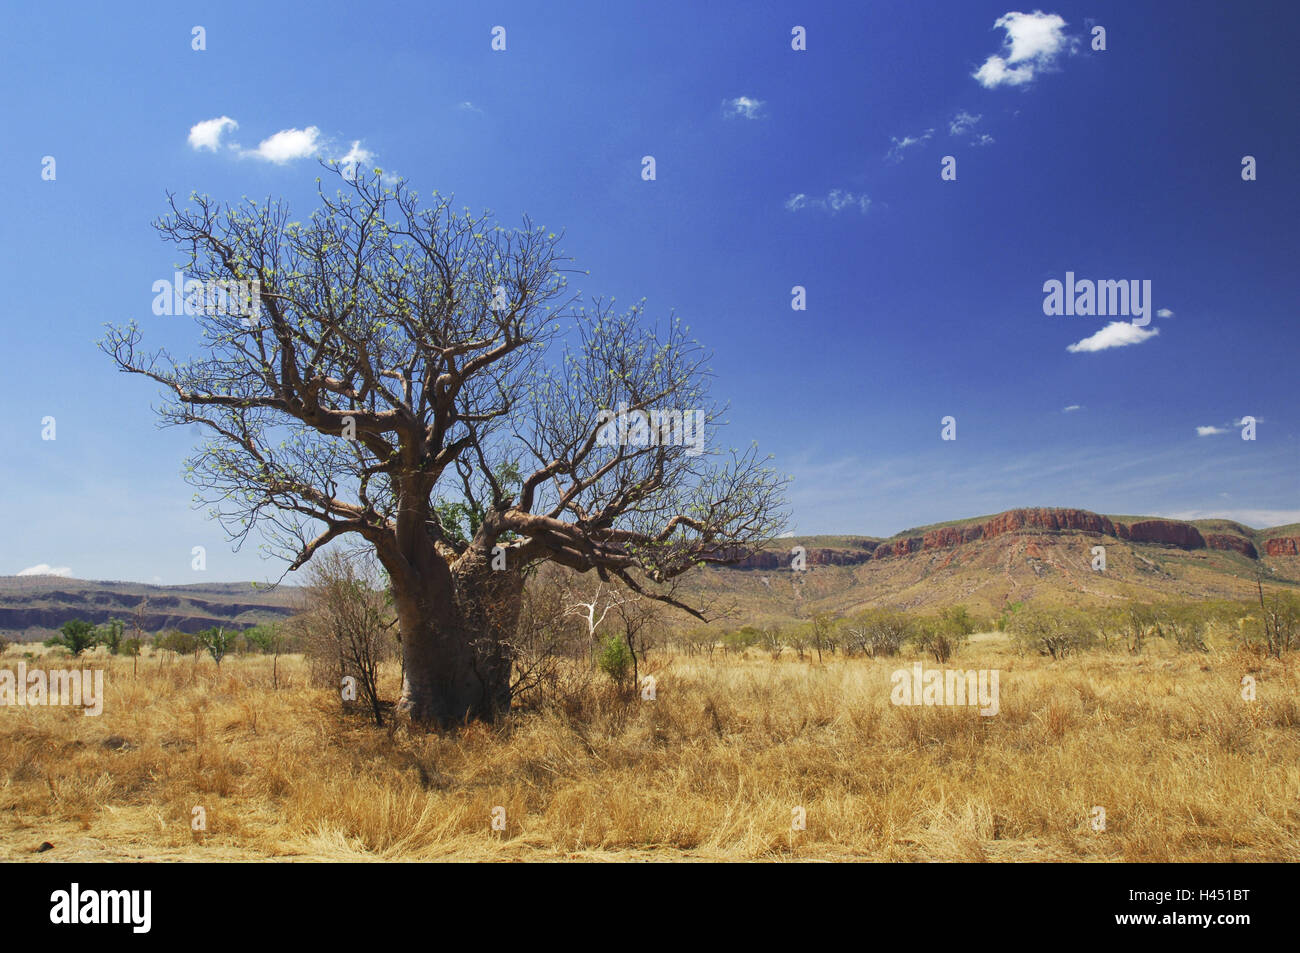 Australia, outback, tree, Stock Photo